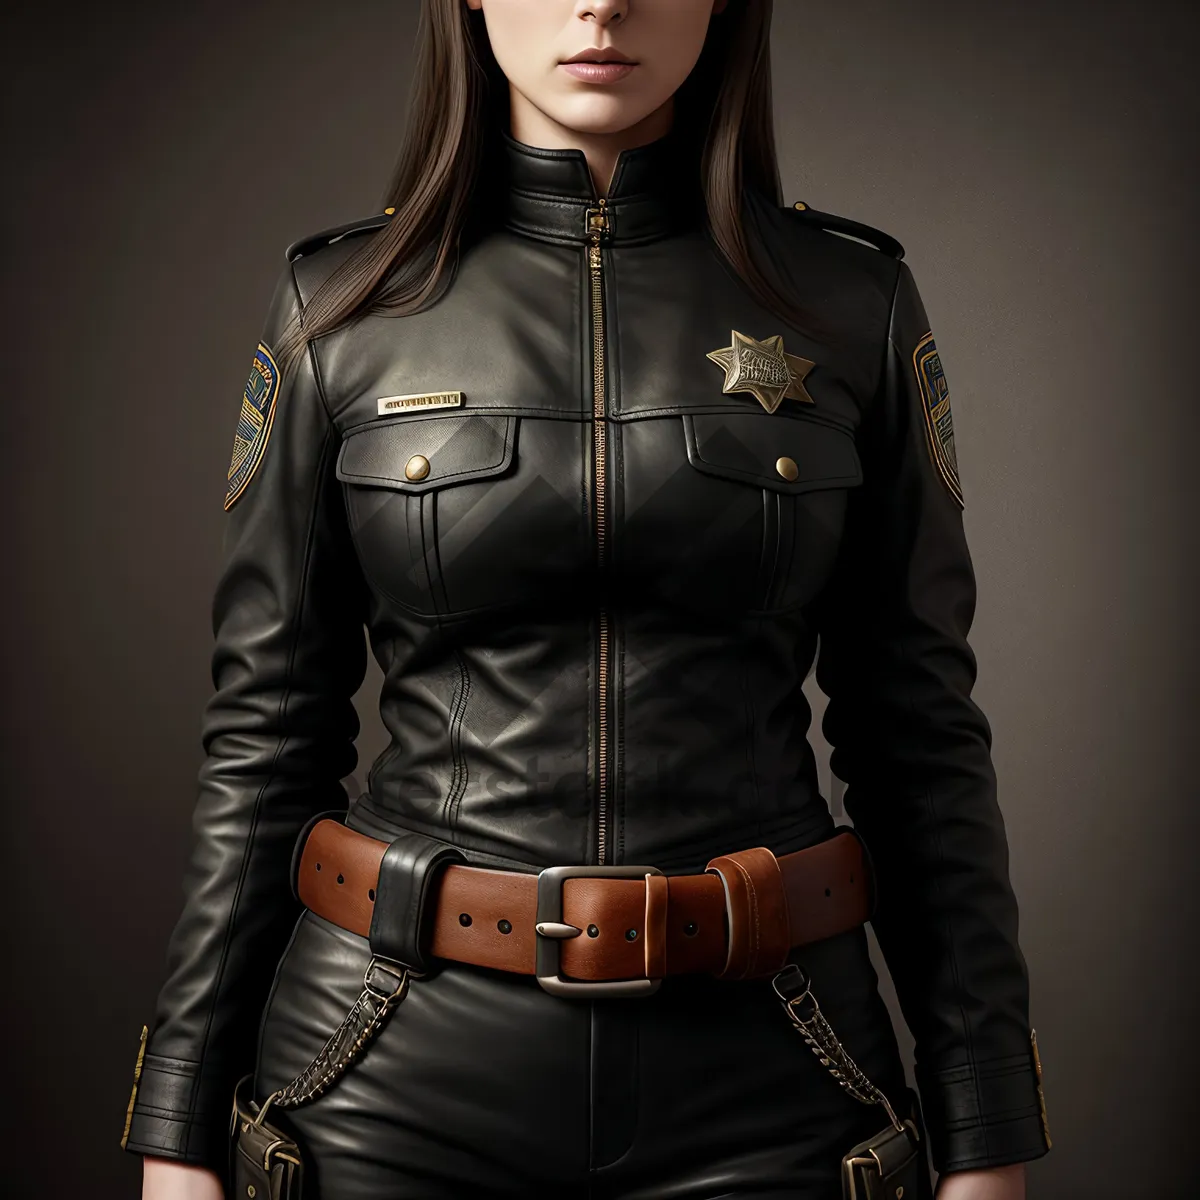 Picture of Stylish Black Leather Jacket Fashion Model